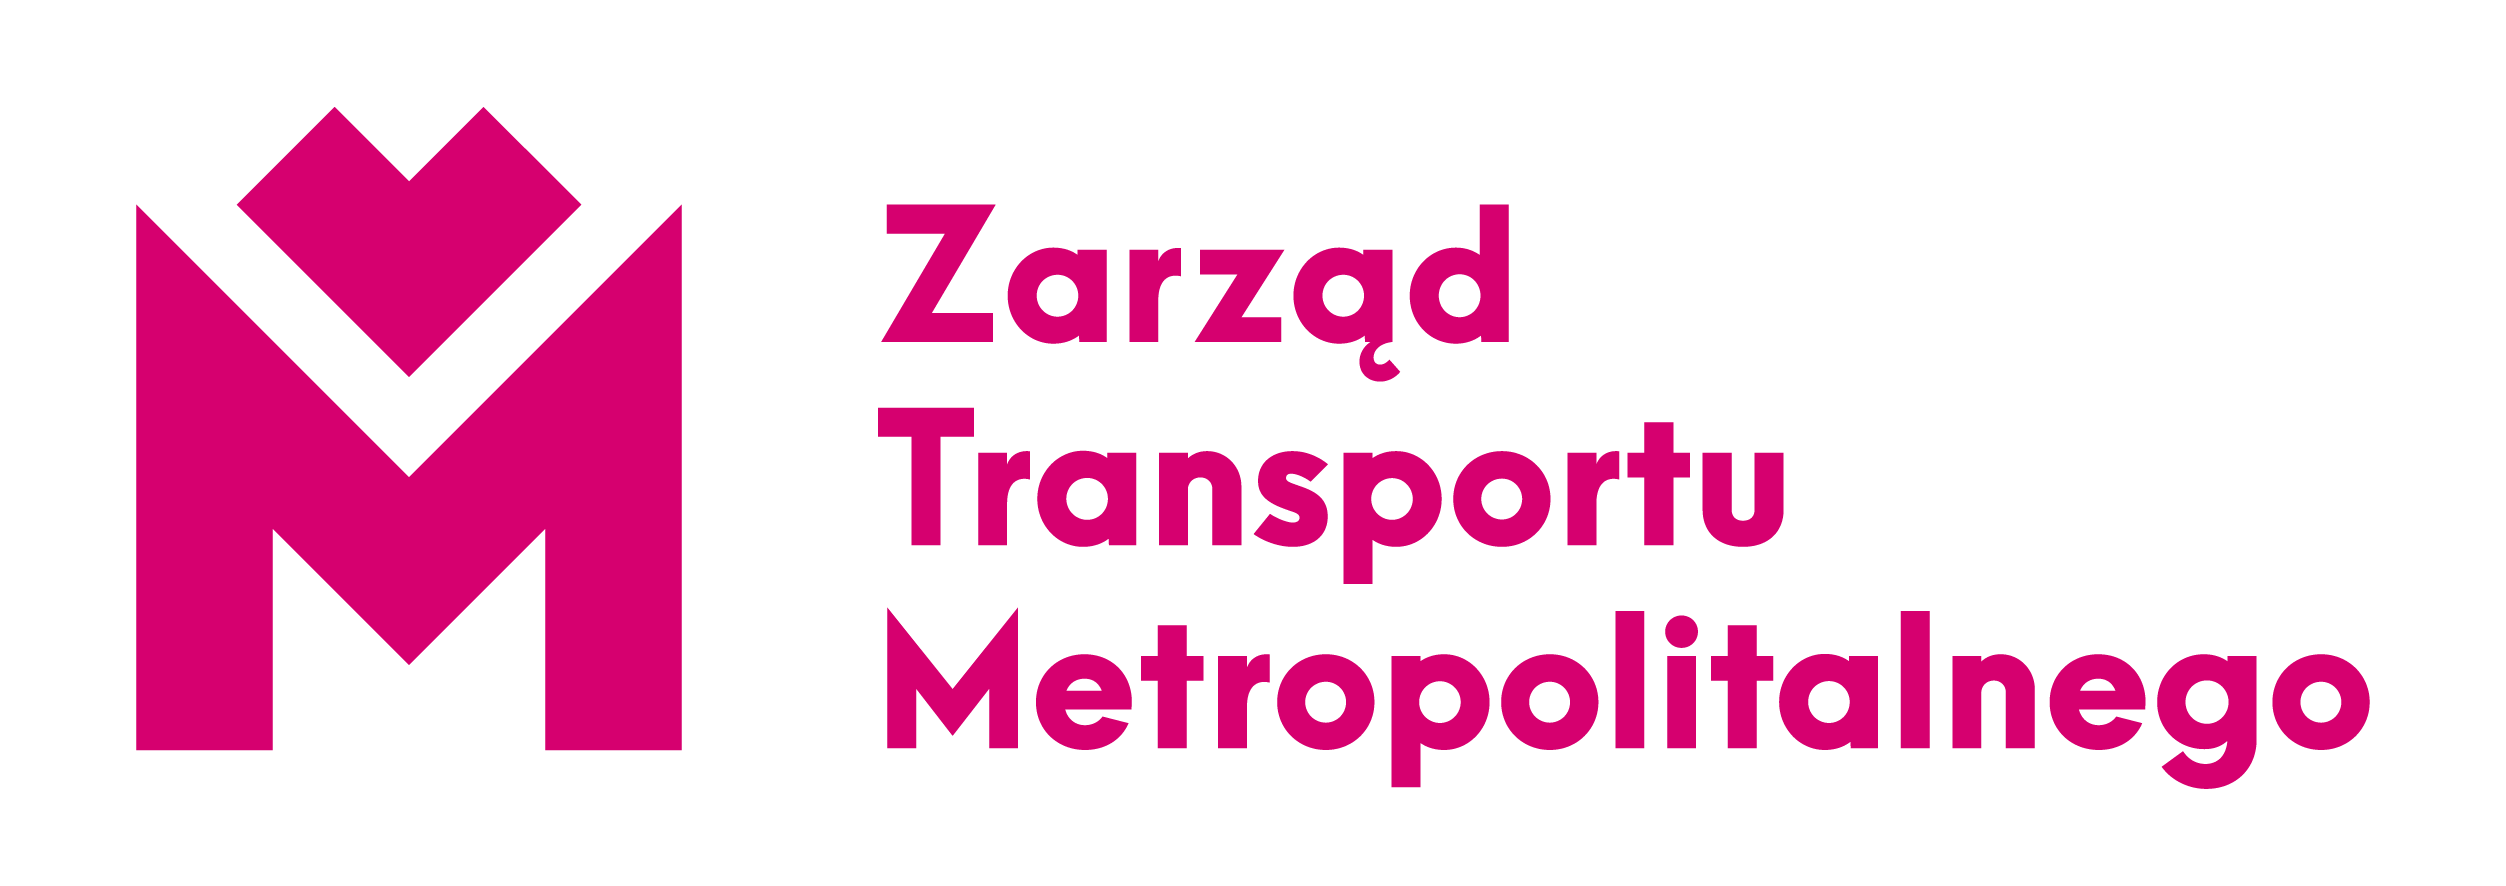 Zarząd Transportu Metropolitalnego logo Oświęcim Tychy rozkład